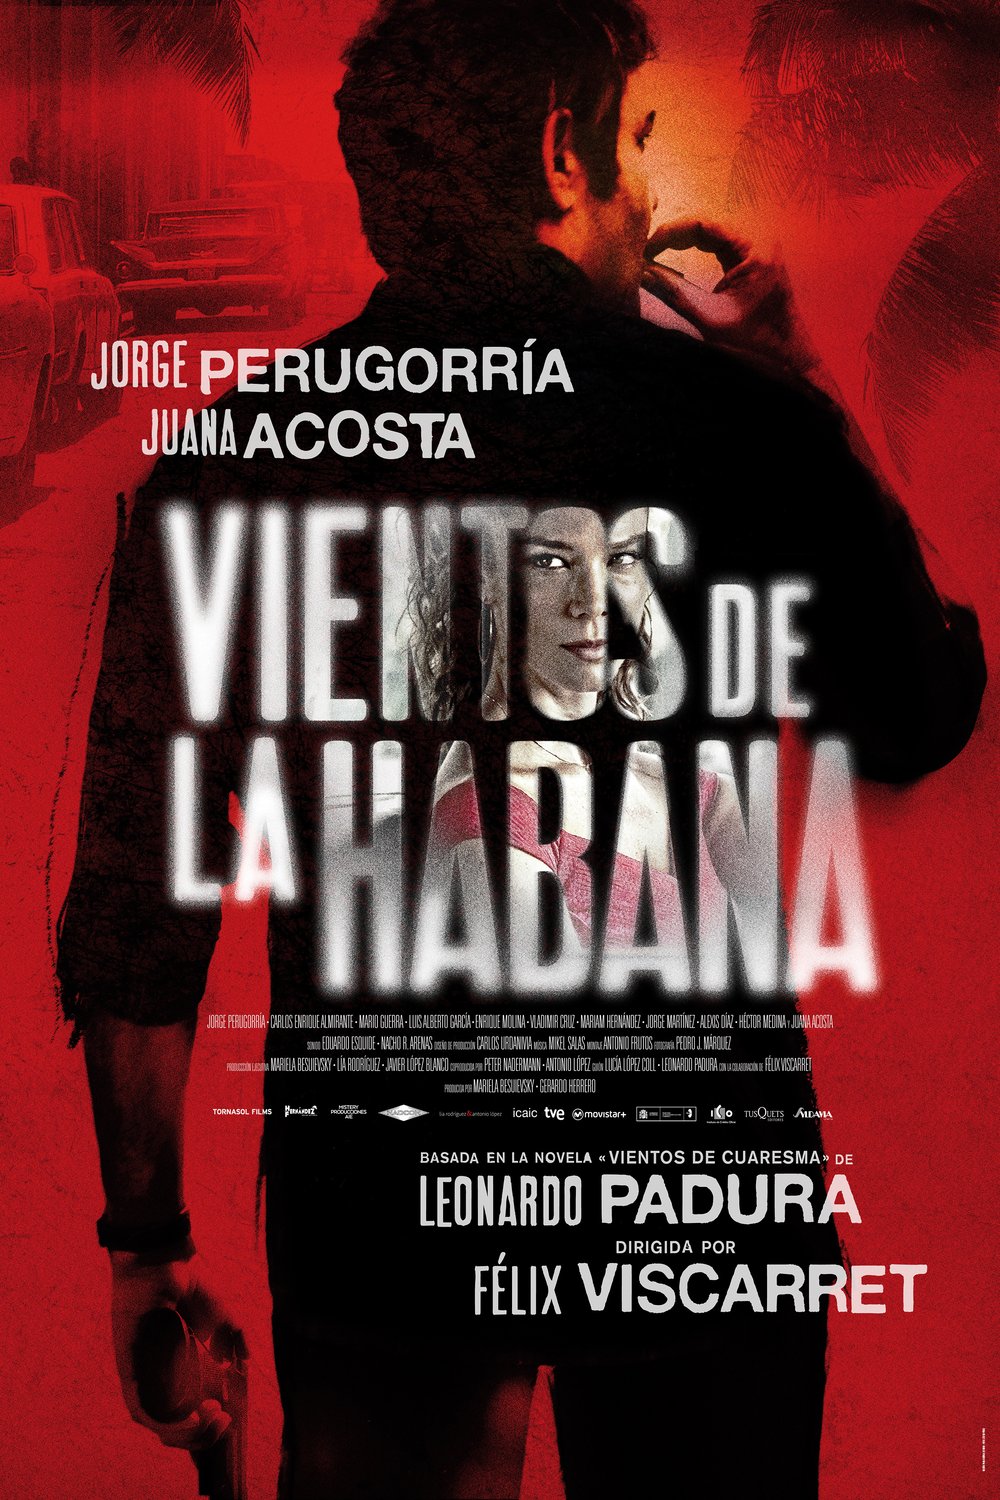 L'affiche originale du film Vientos de la Habana en espagnol